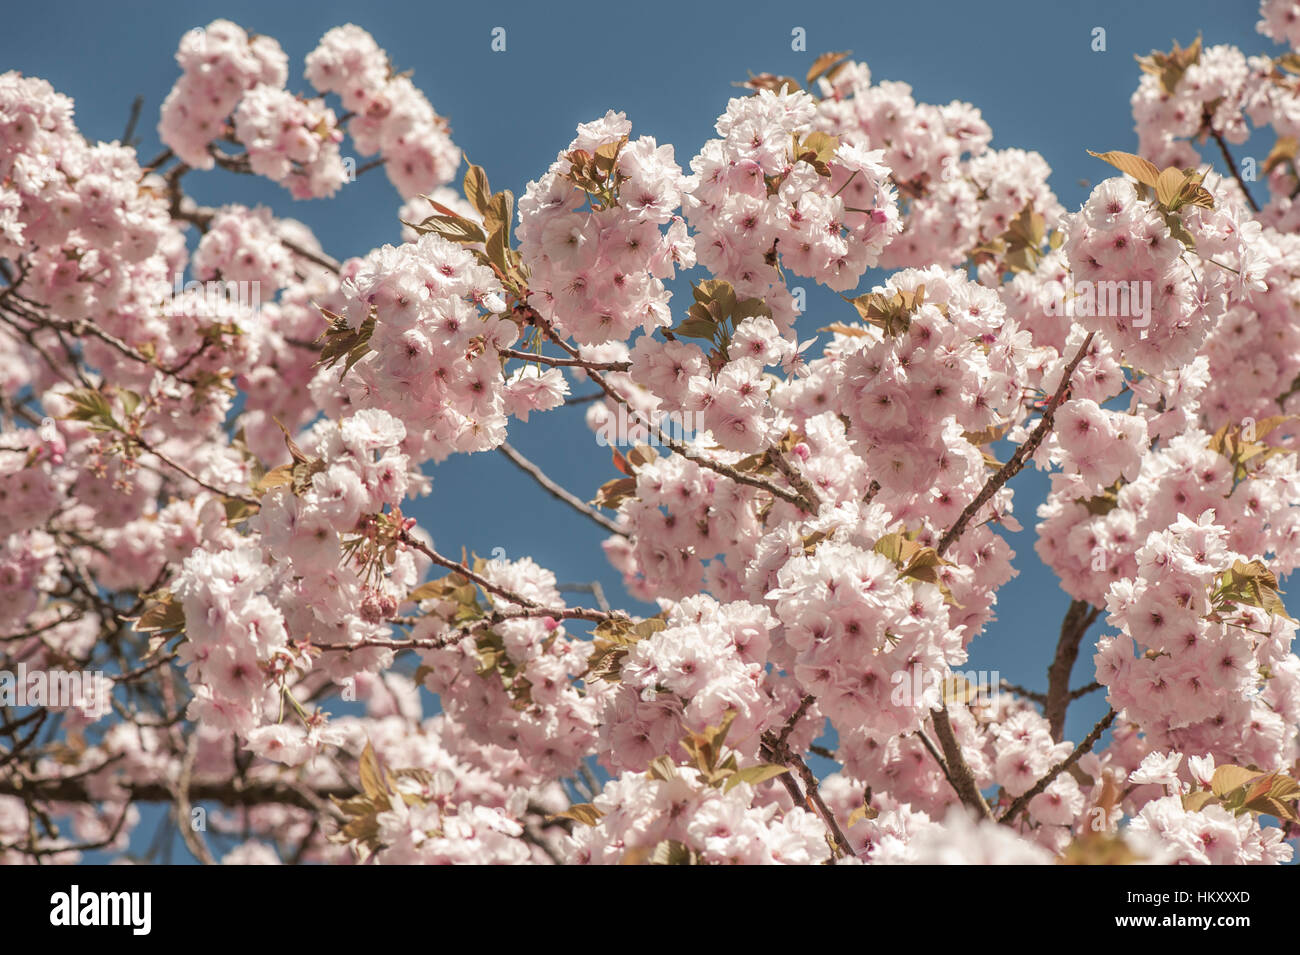 Prunus 'Matsumae-fuki' Japanese flowering cherry tree également connu sous le nom de Prunus 'Chocolate Ice', image prise contre un ciel bleu. Banque D'Images